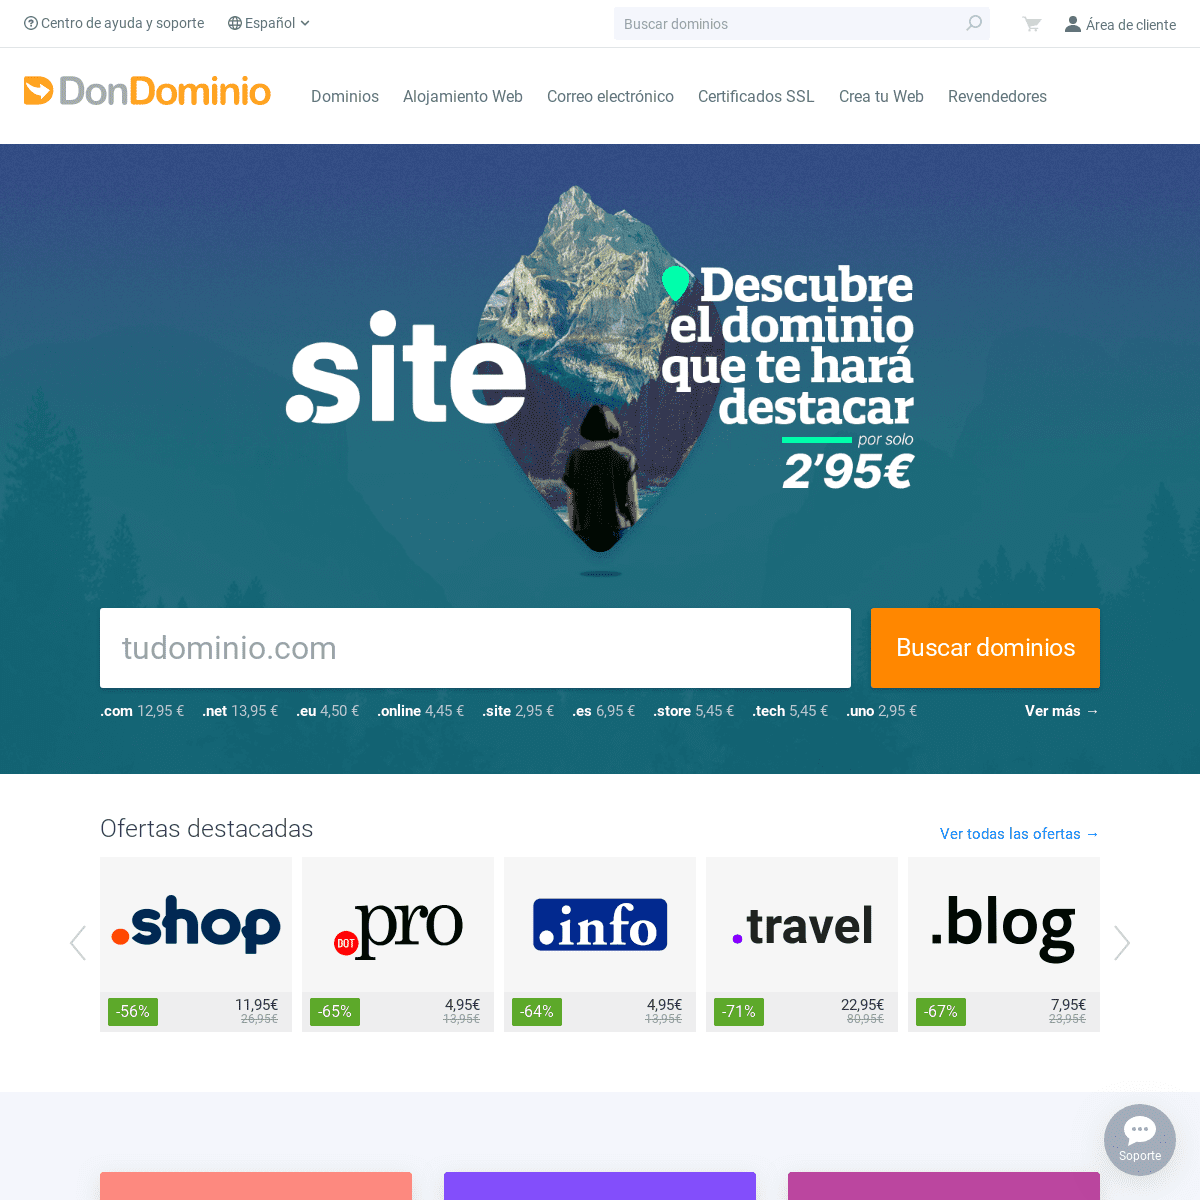 A complete backup of dondominio.com